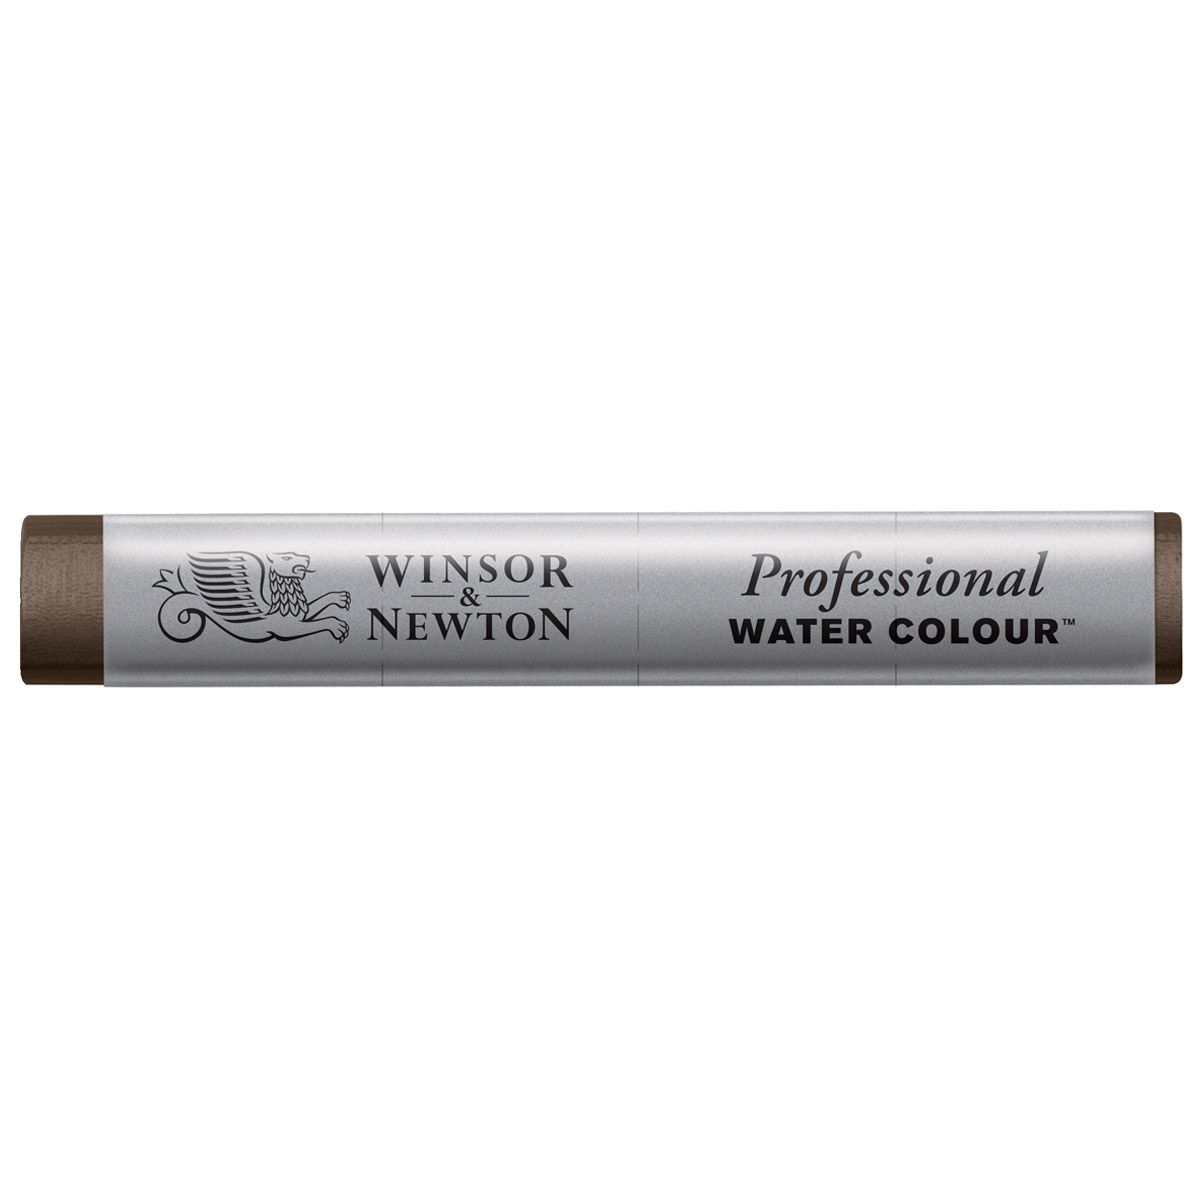 Professional Watercolour Stick - Van Dyke Brown